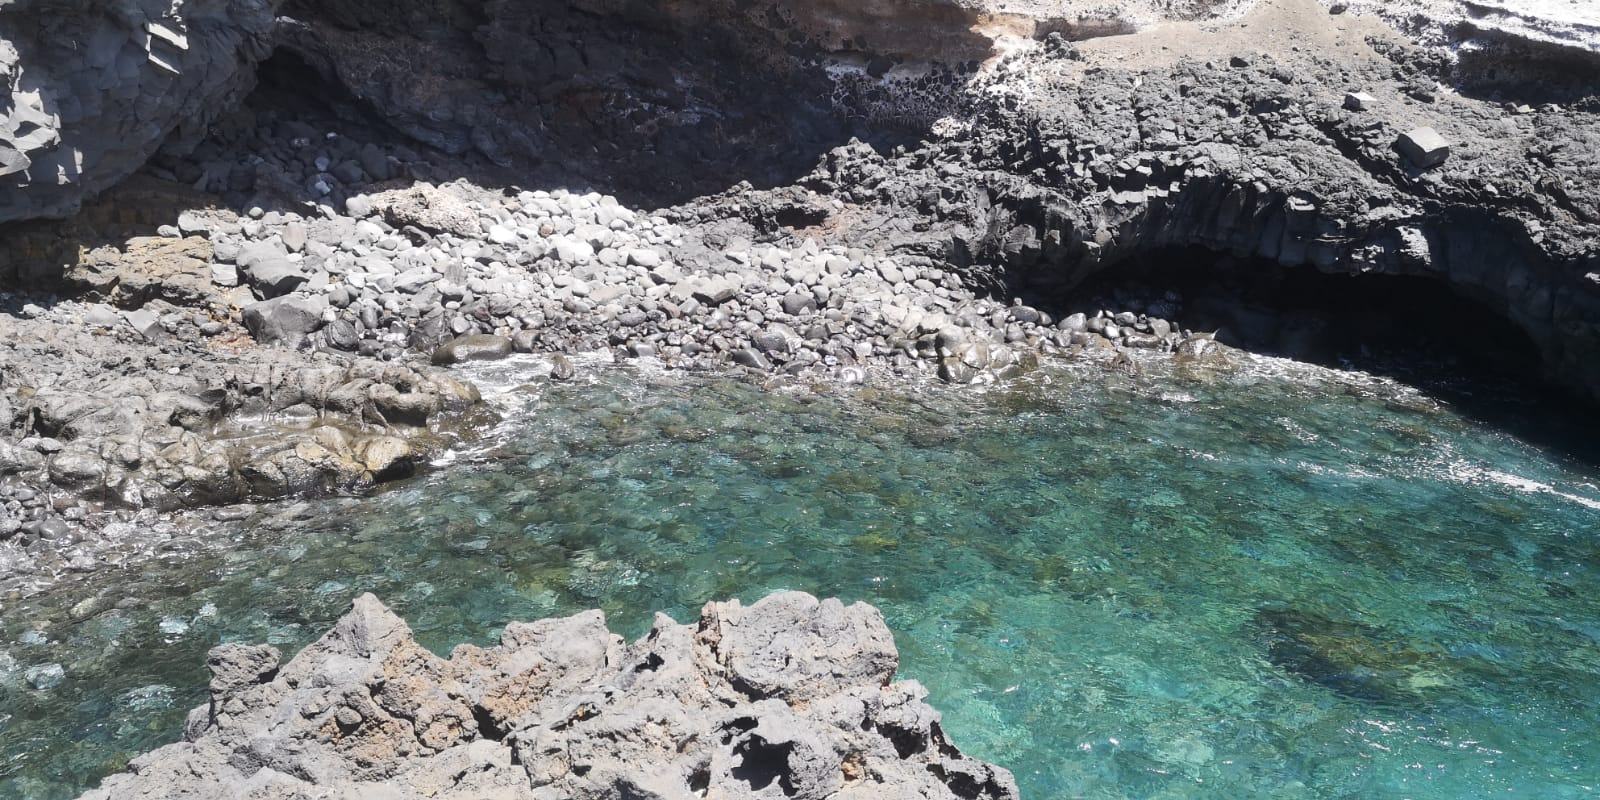 La costa de la comarca de La Isla Baja está llena de atractivas piscinas naturales con agua transparente